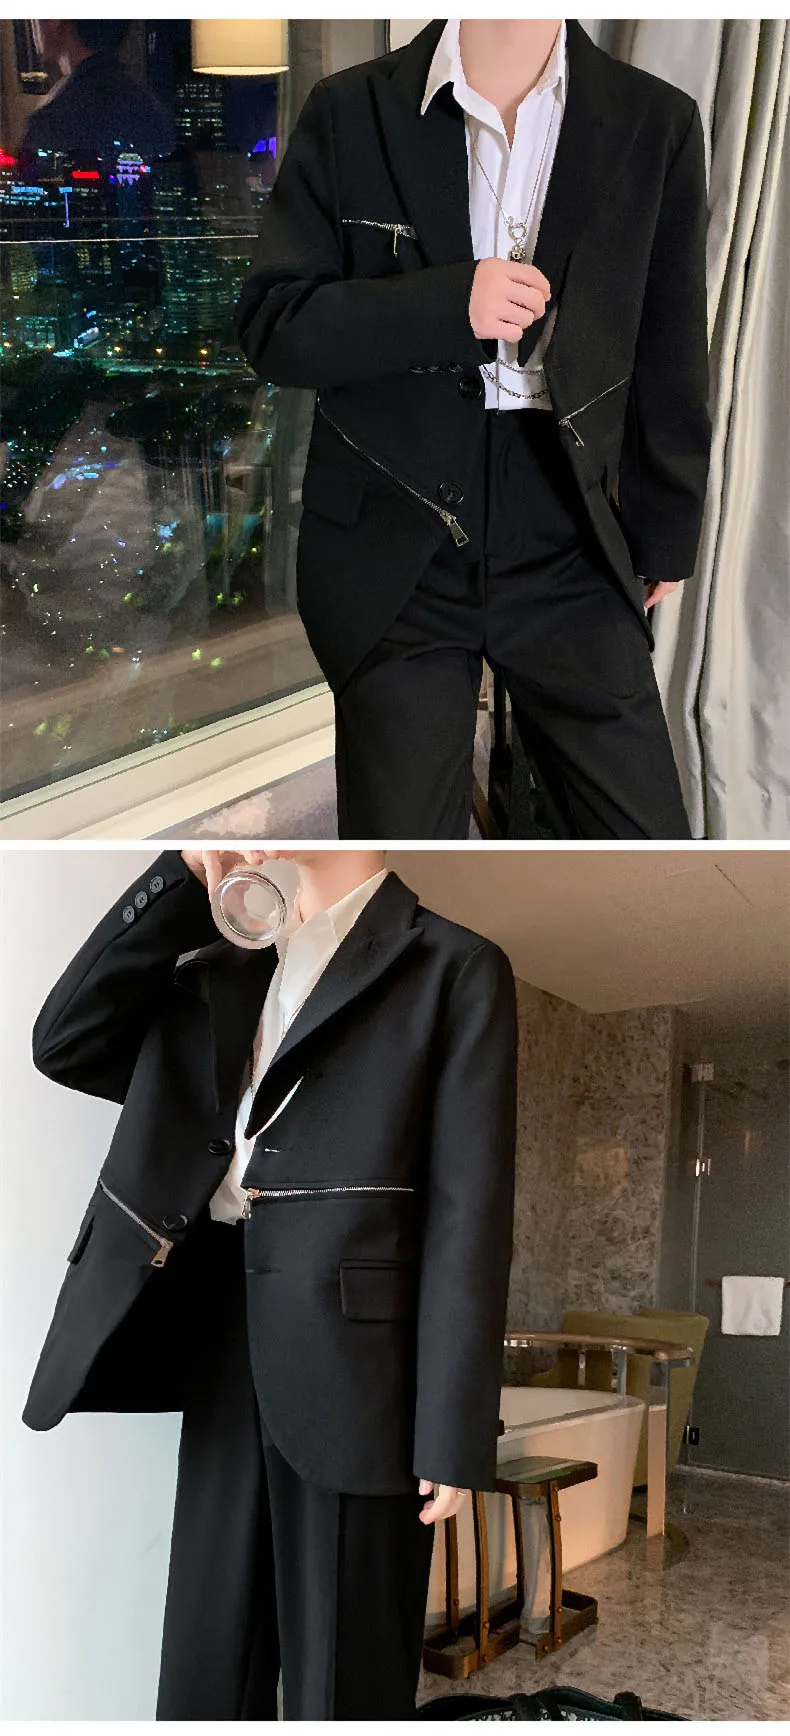 Новинка, Мужской дизайнерский повседневный костюм пиджак на молнии, куртка, пальто, мужской японский уличный костюм, верхняя одежда, весна-осень